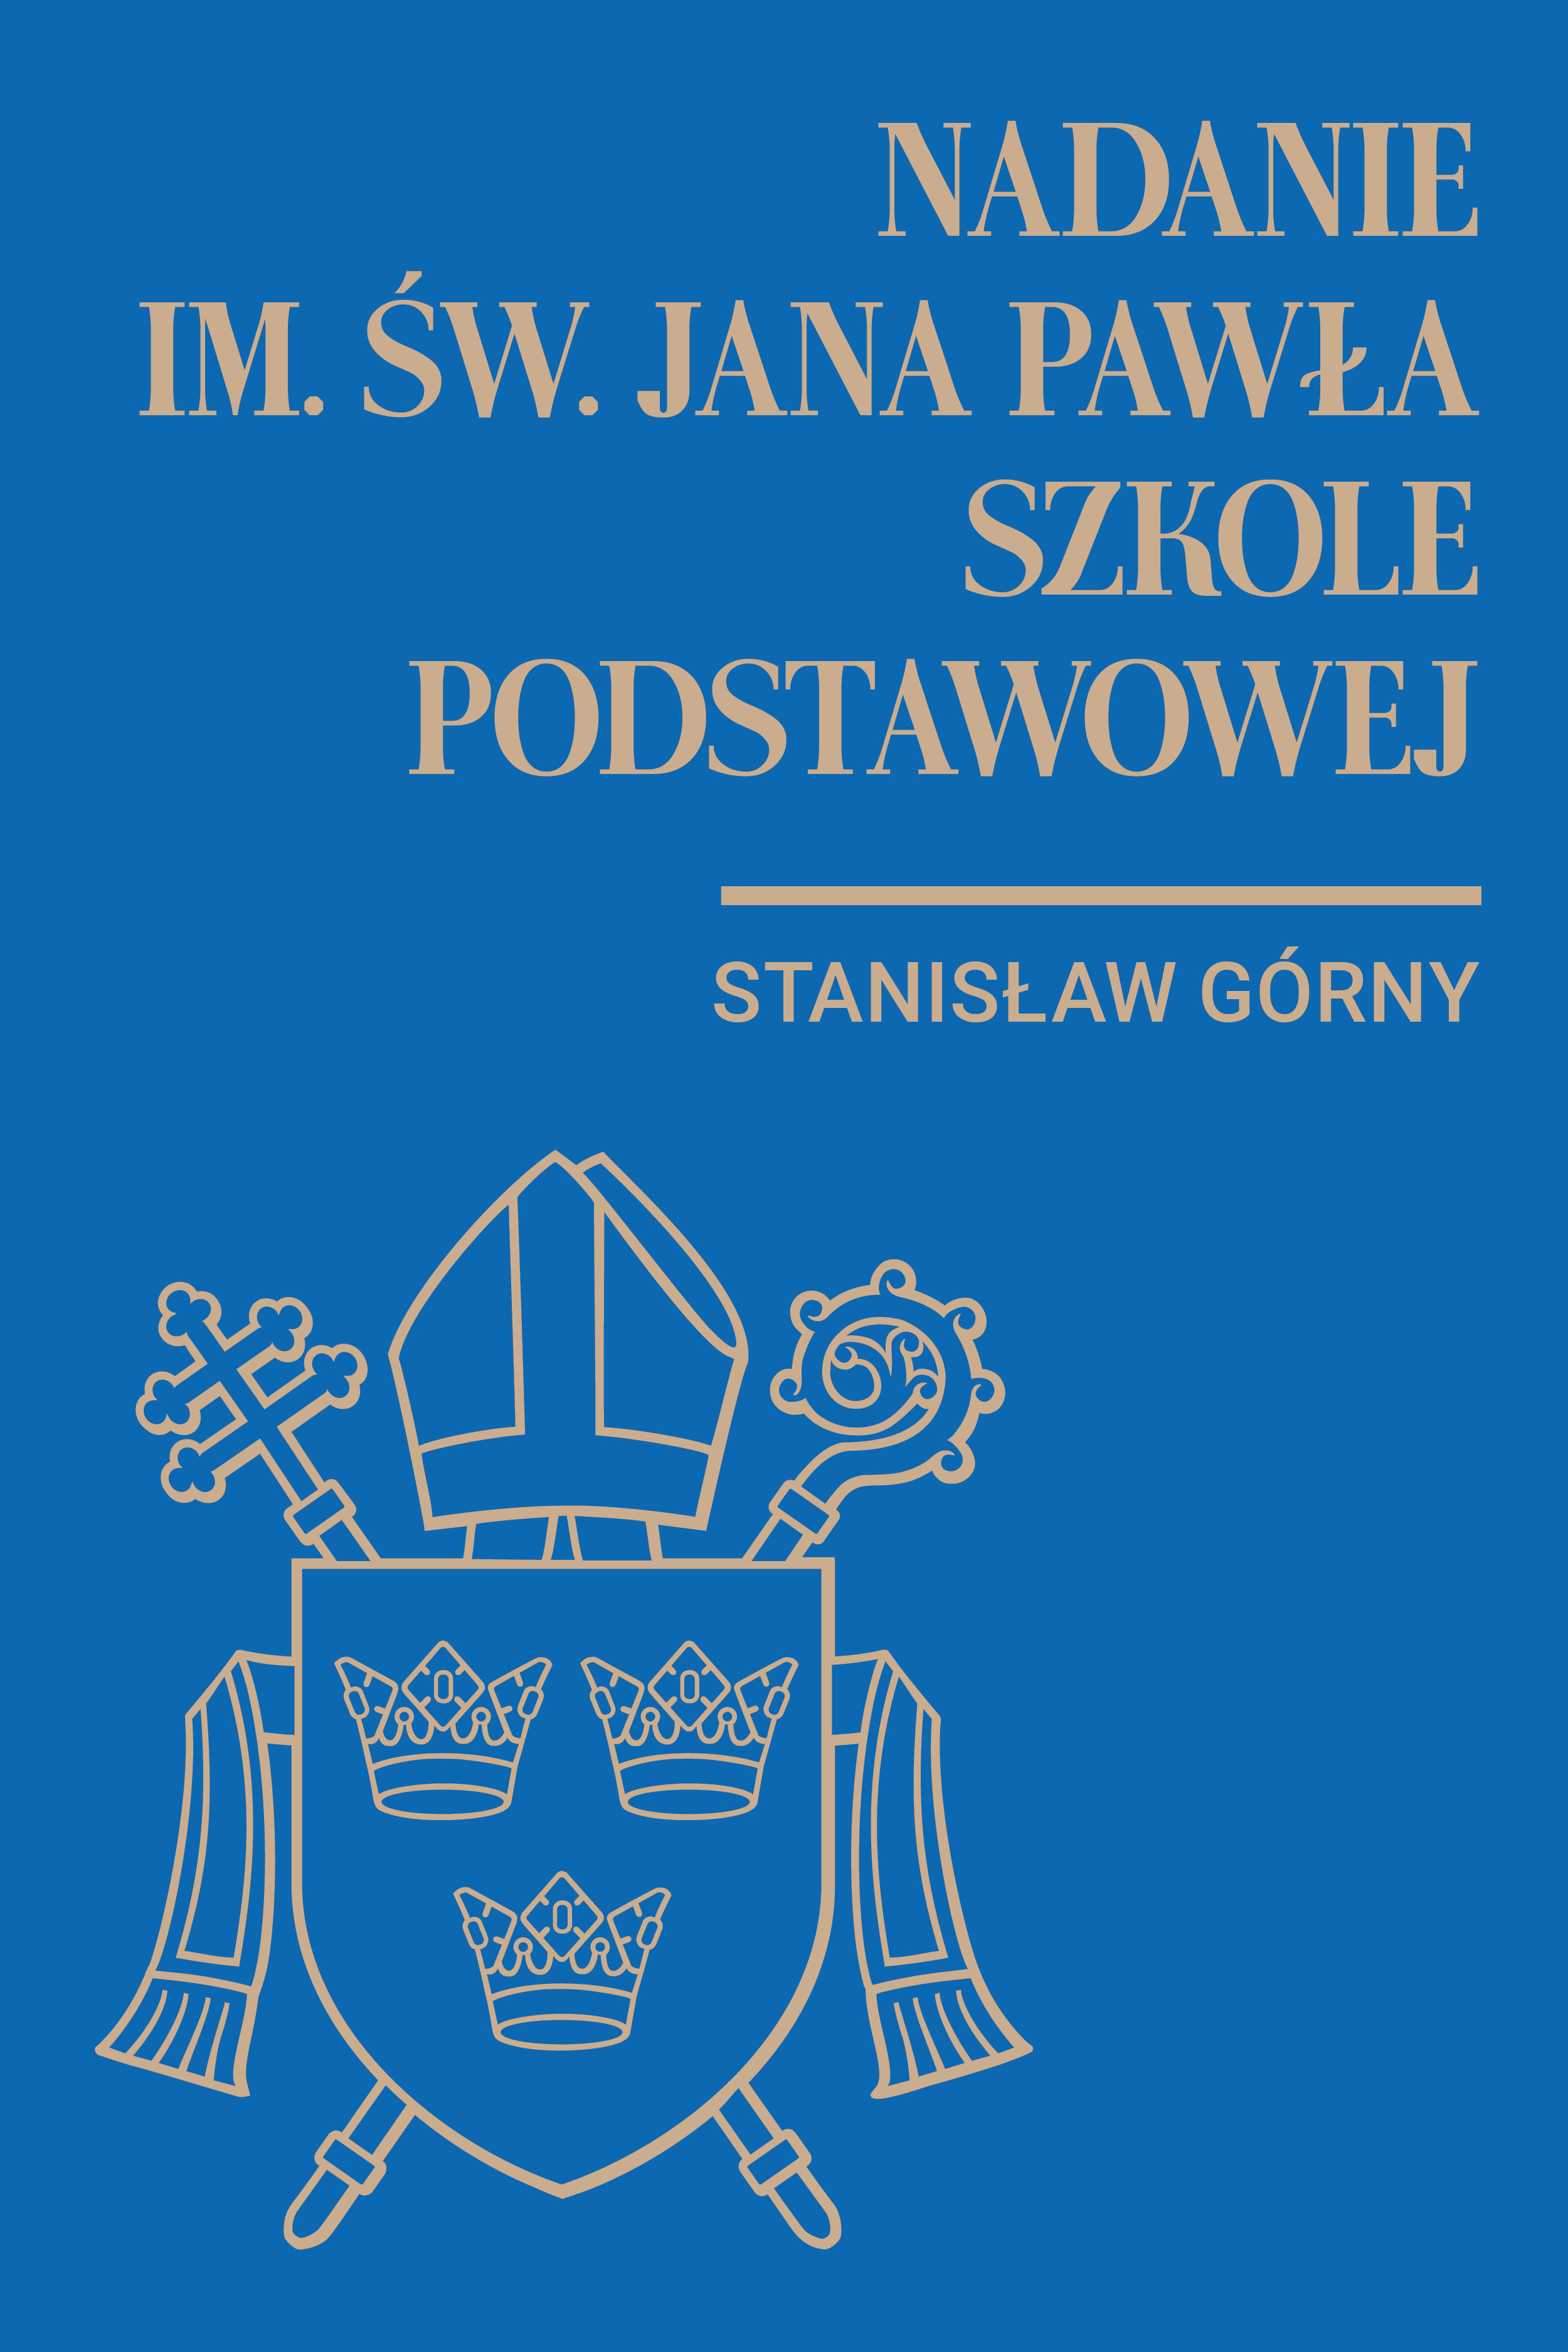 Nadanie imienia św. Jana Pawła II Szkole Podstawowej w Stanisławiu Górnym